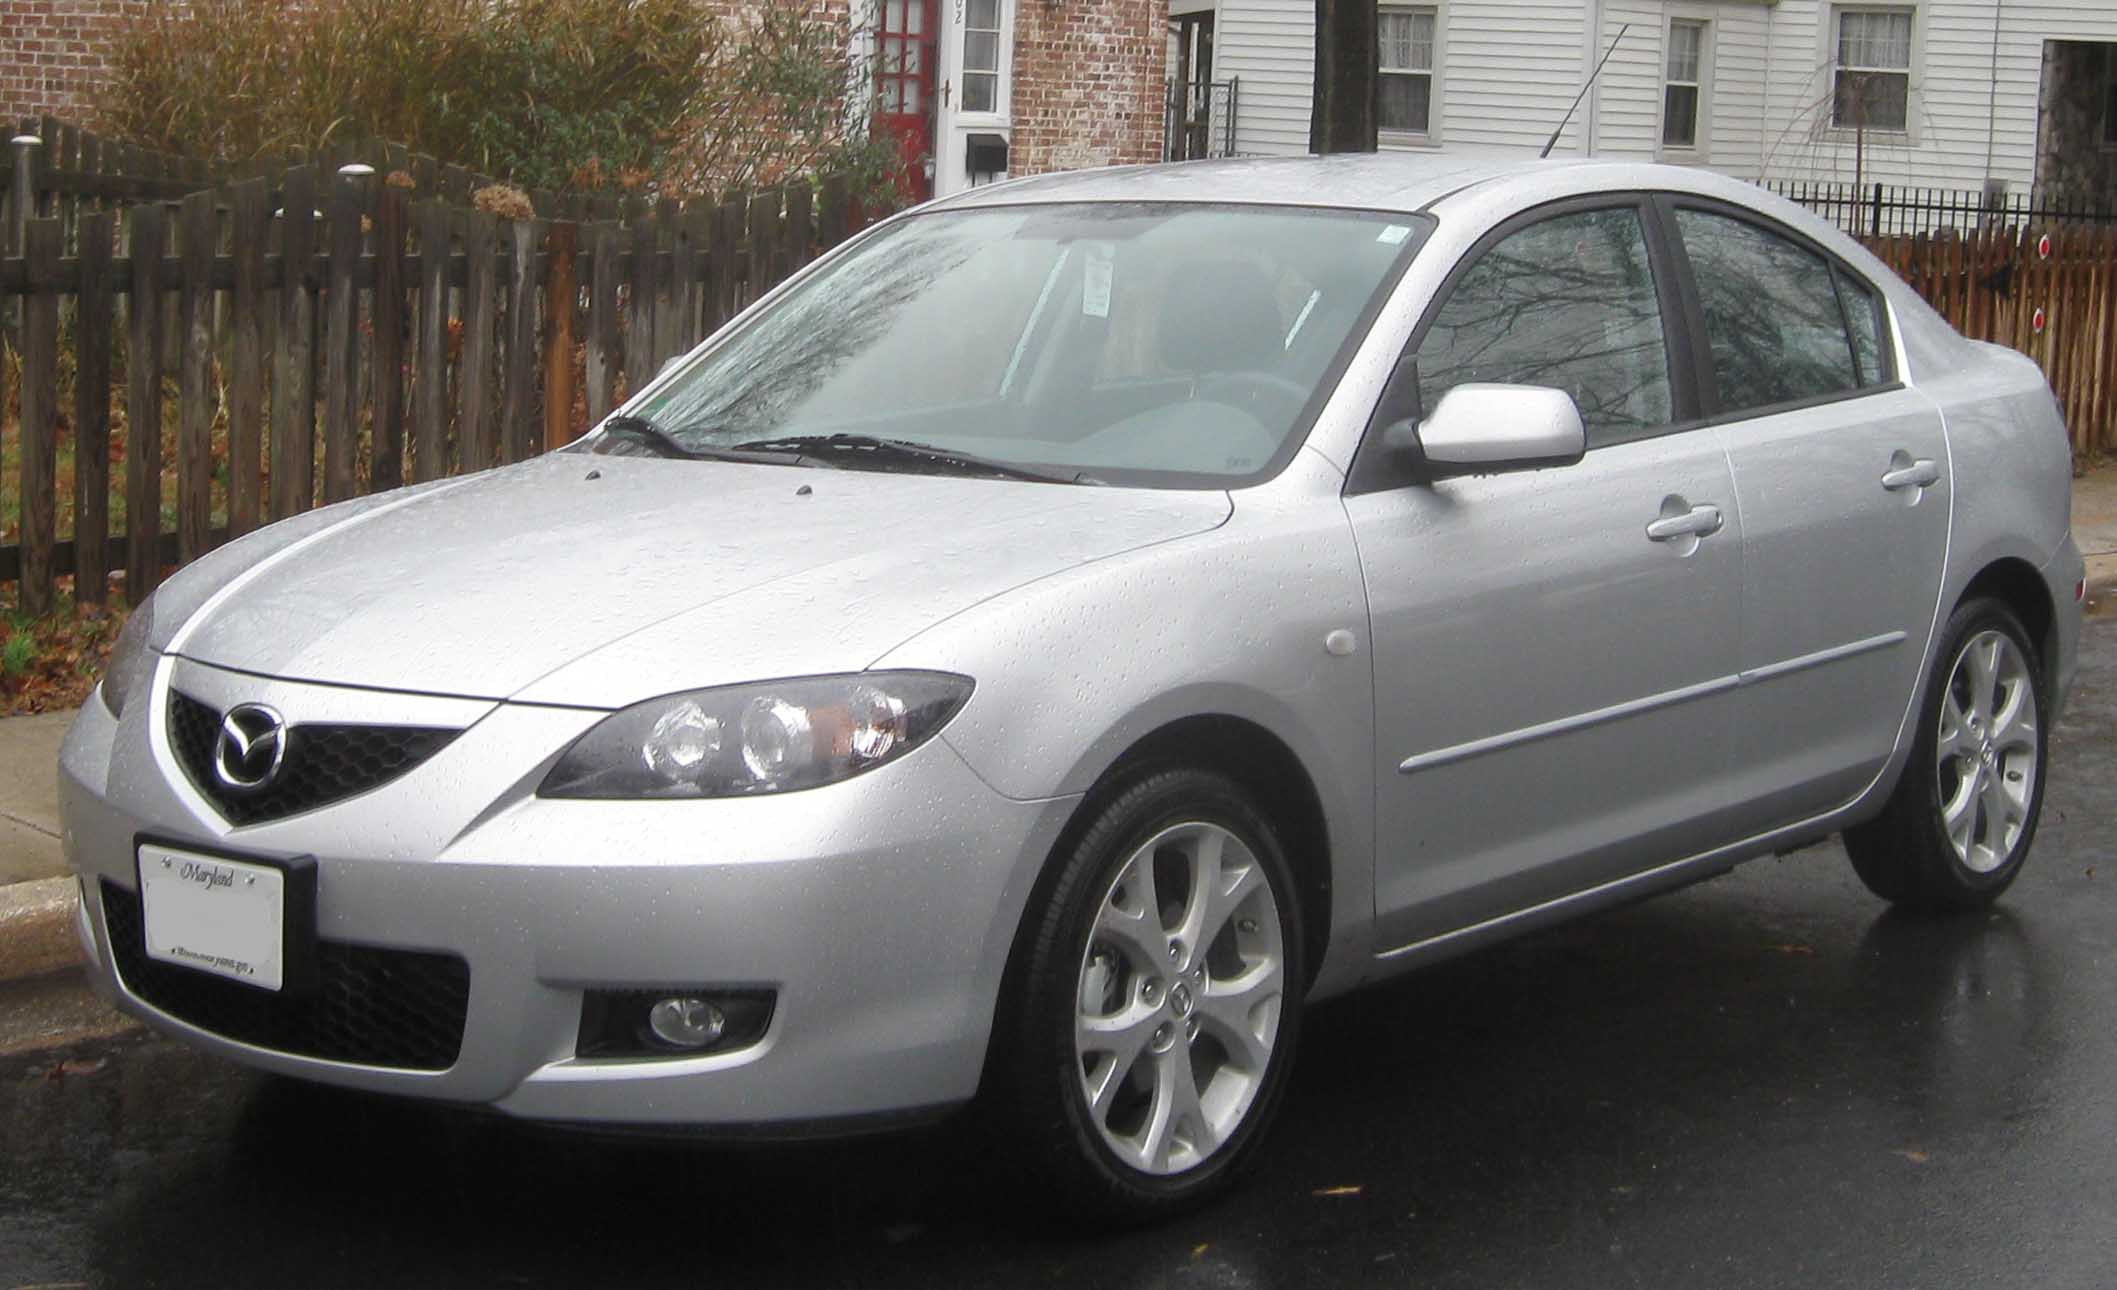 File:2007-2009 Mazda 3 sedan.jpg